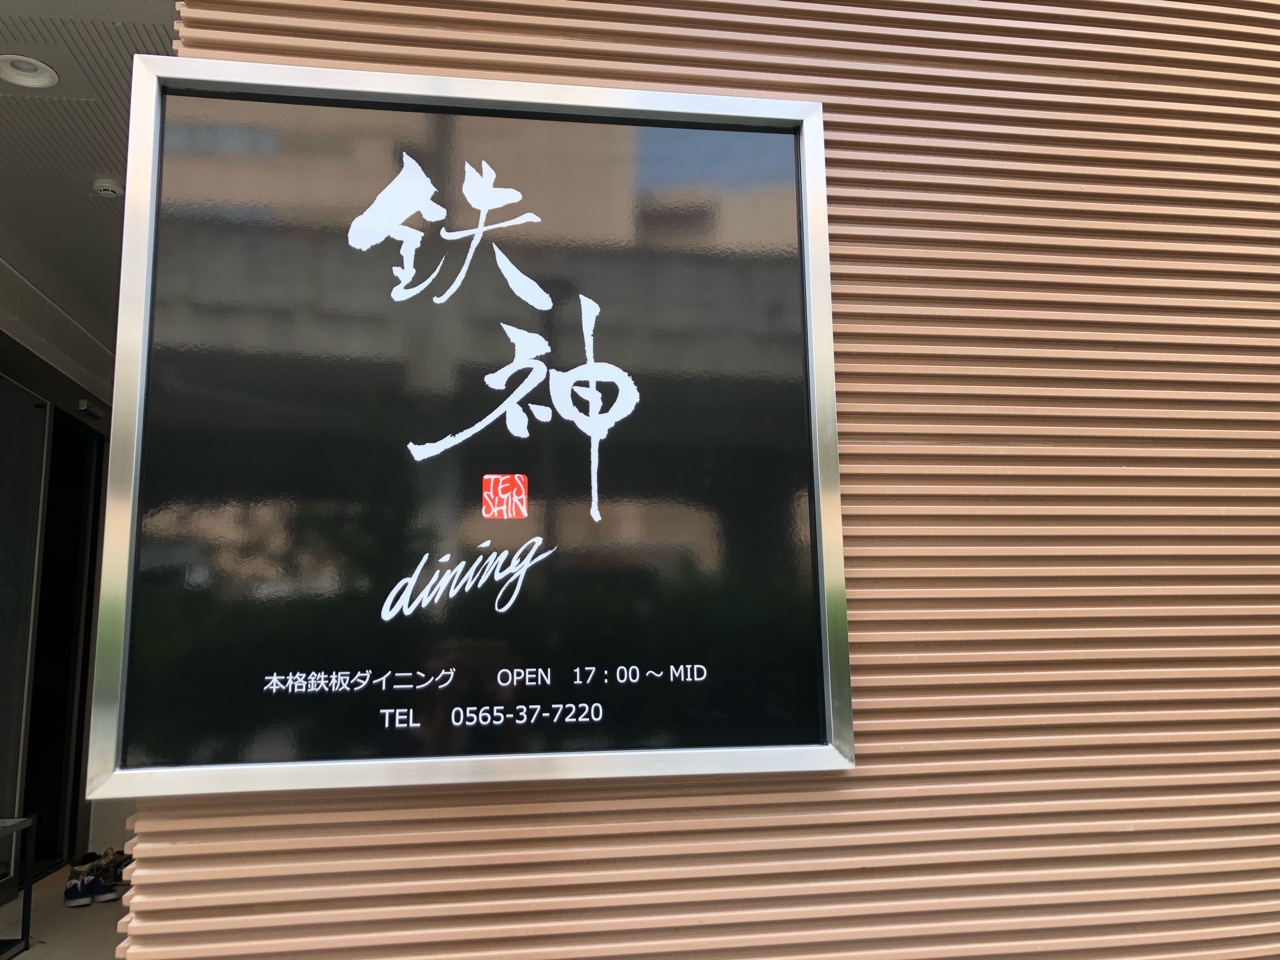 2019年6月24日にオープンする「鉄神dining」